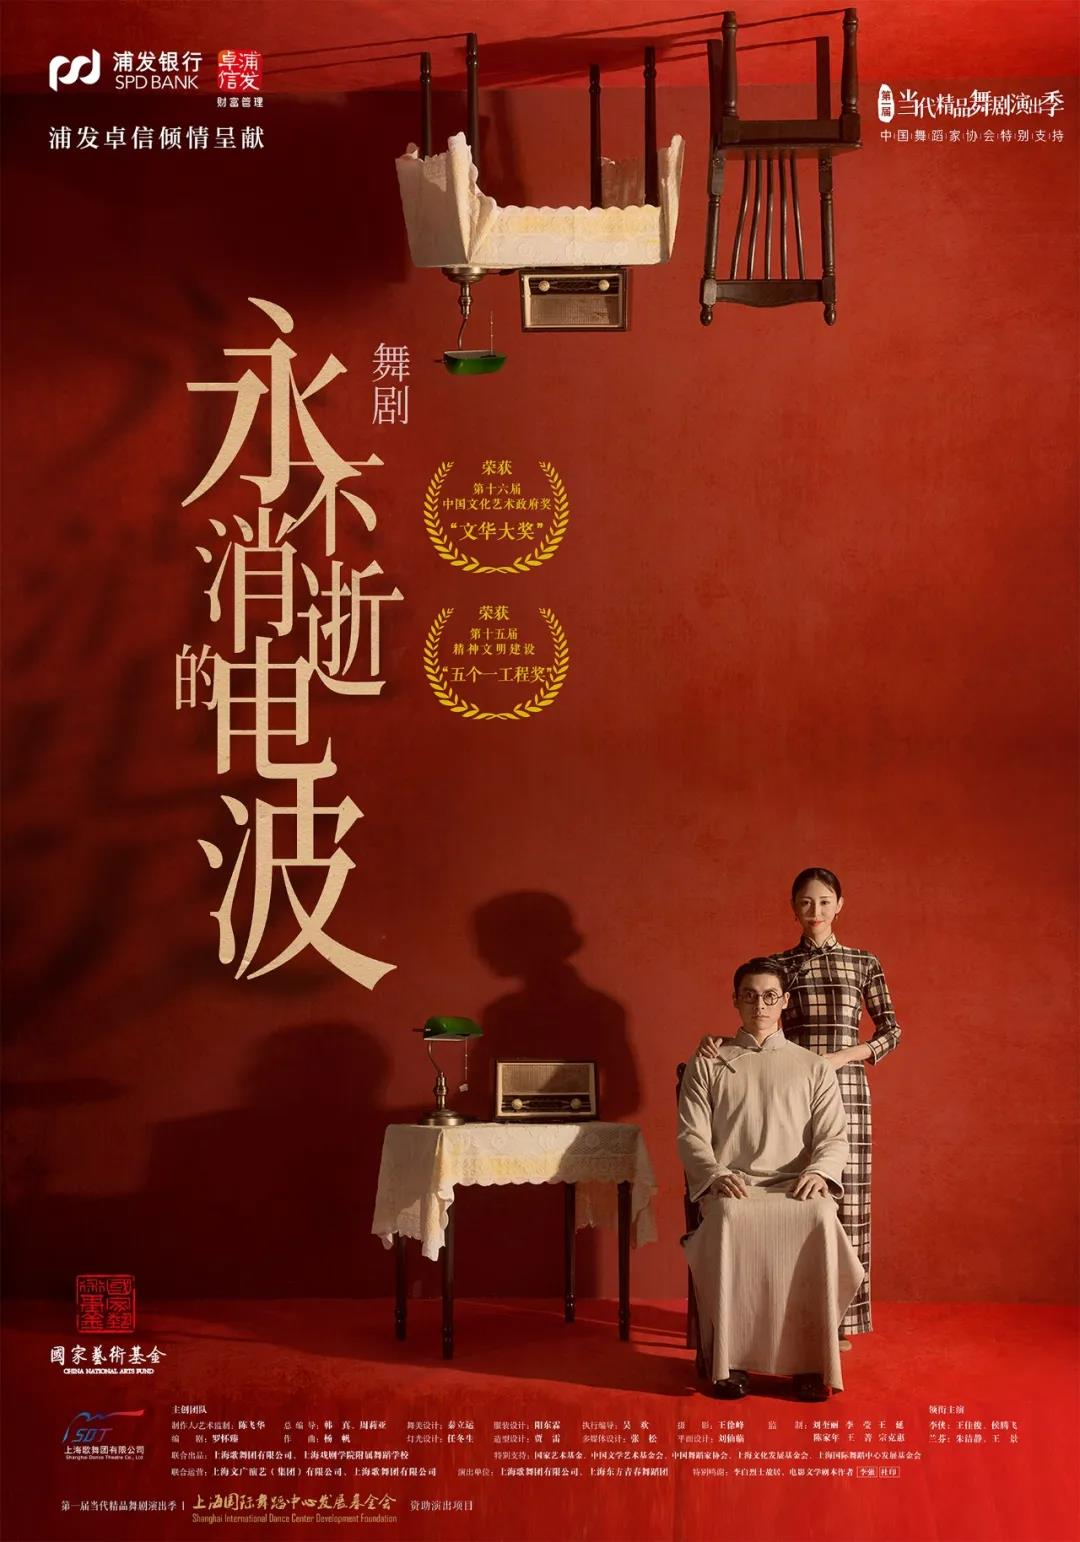 「朱洁静/王佳俊」舞剧《永不消逝的电波》上海国际舞蹈中心